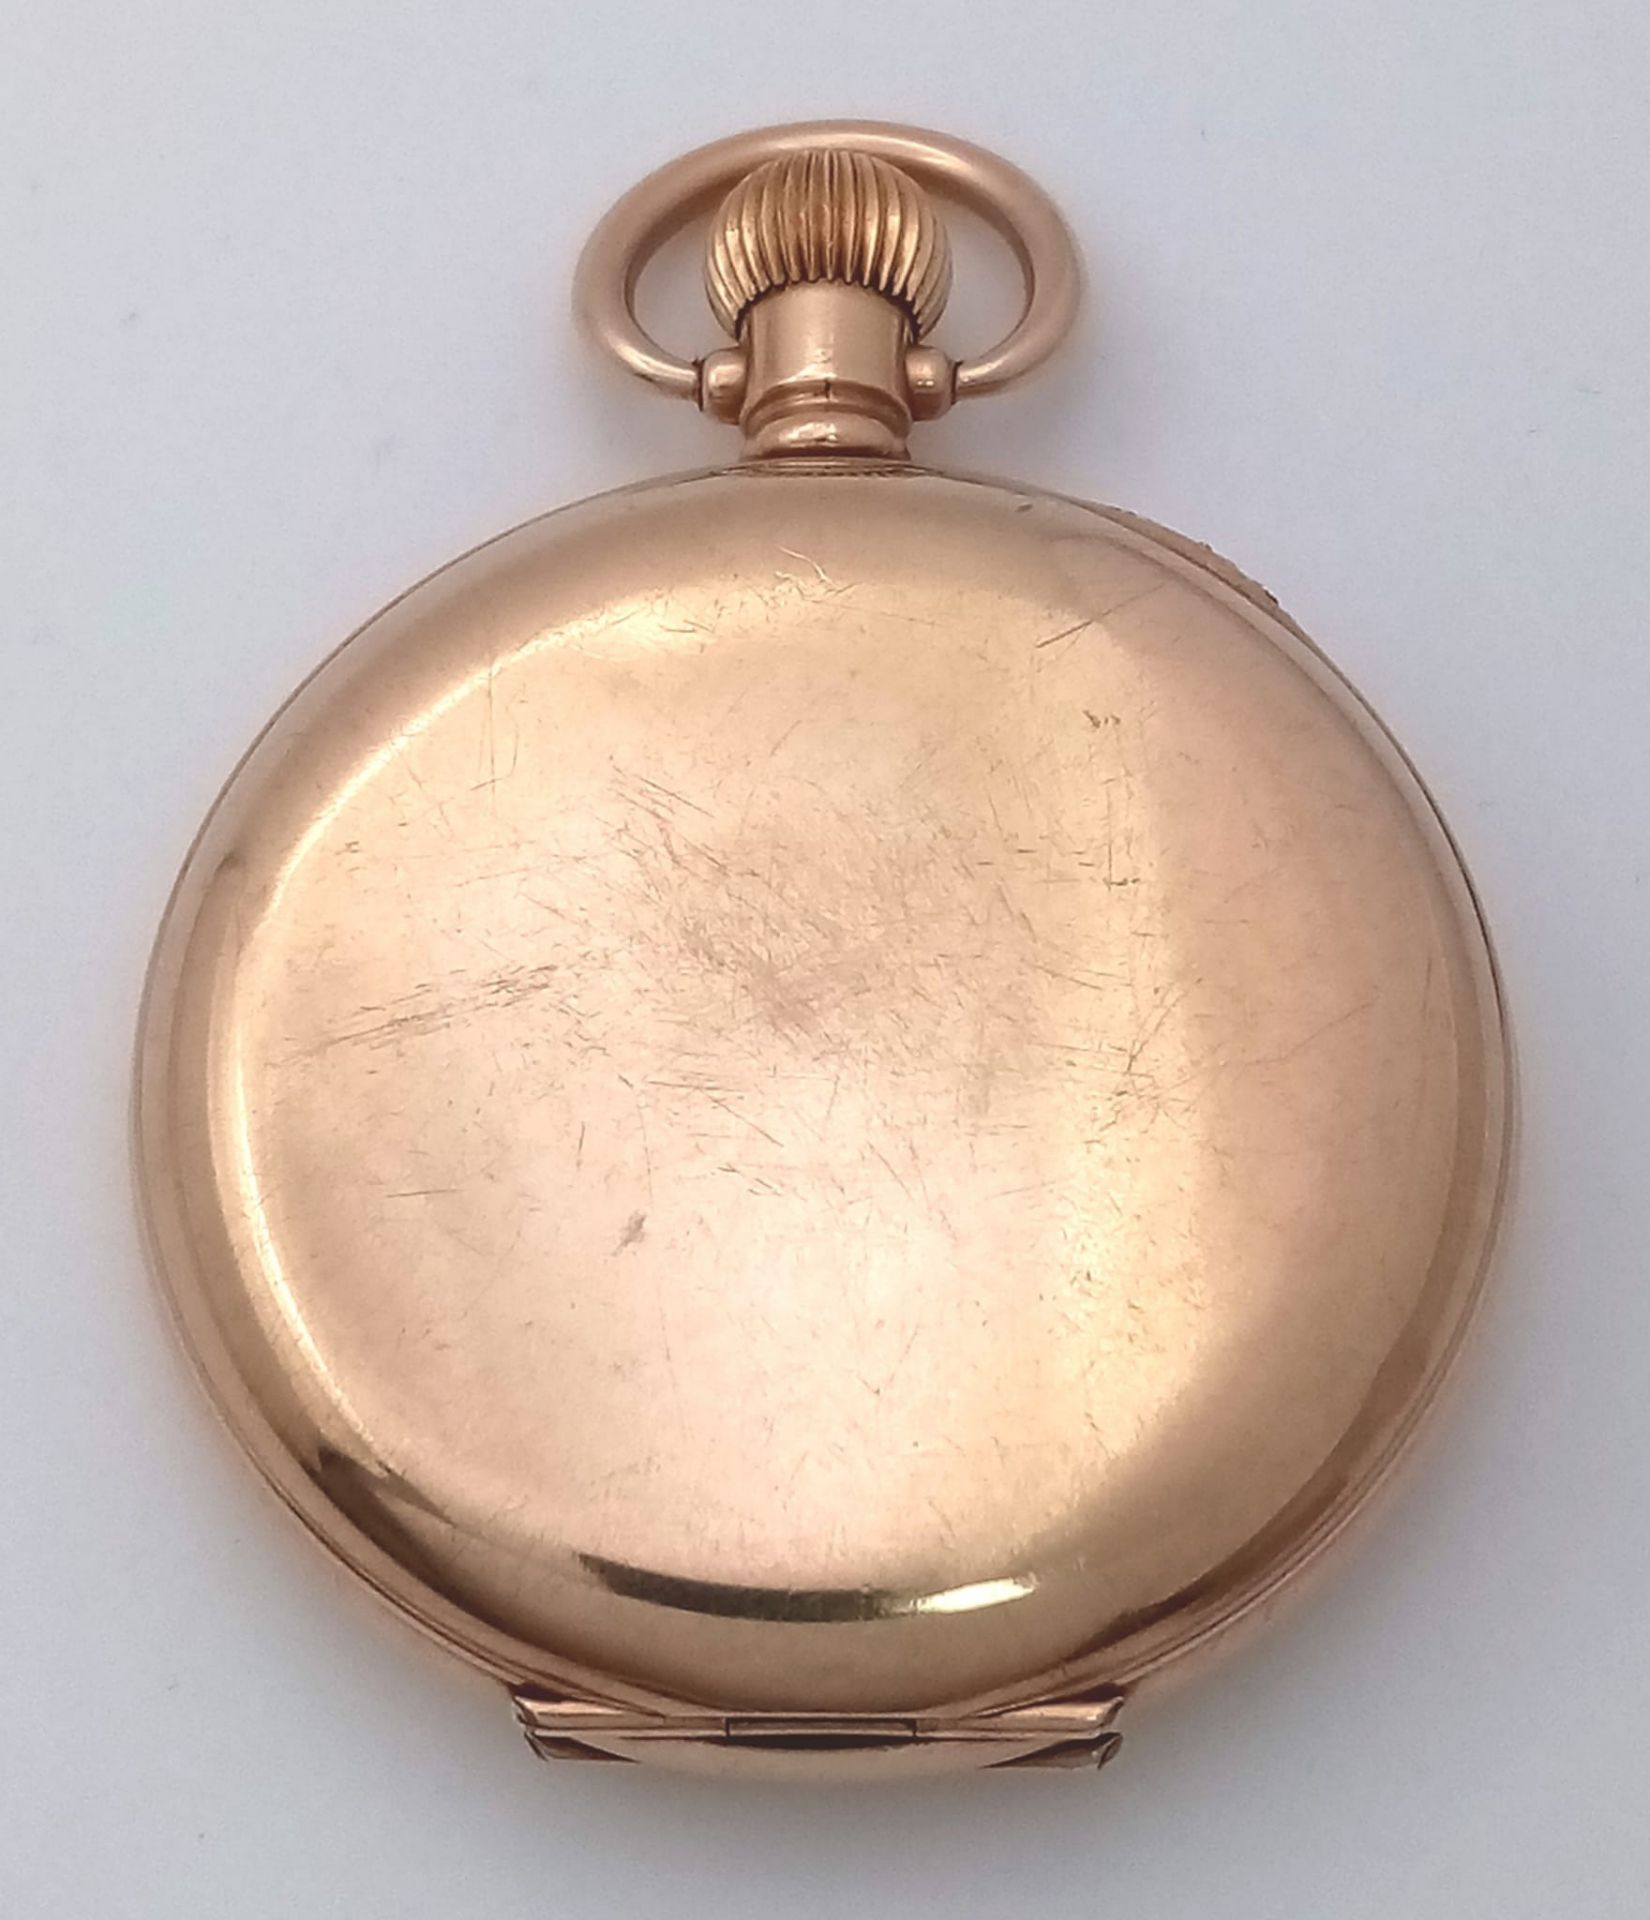 An Antique 10K Gold-Plated Cased Waltham Traveler Full Hunter Pocket Watch. Dennison case. Top winde - Image 6 of 12